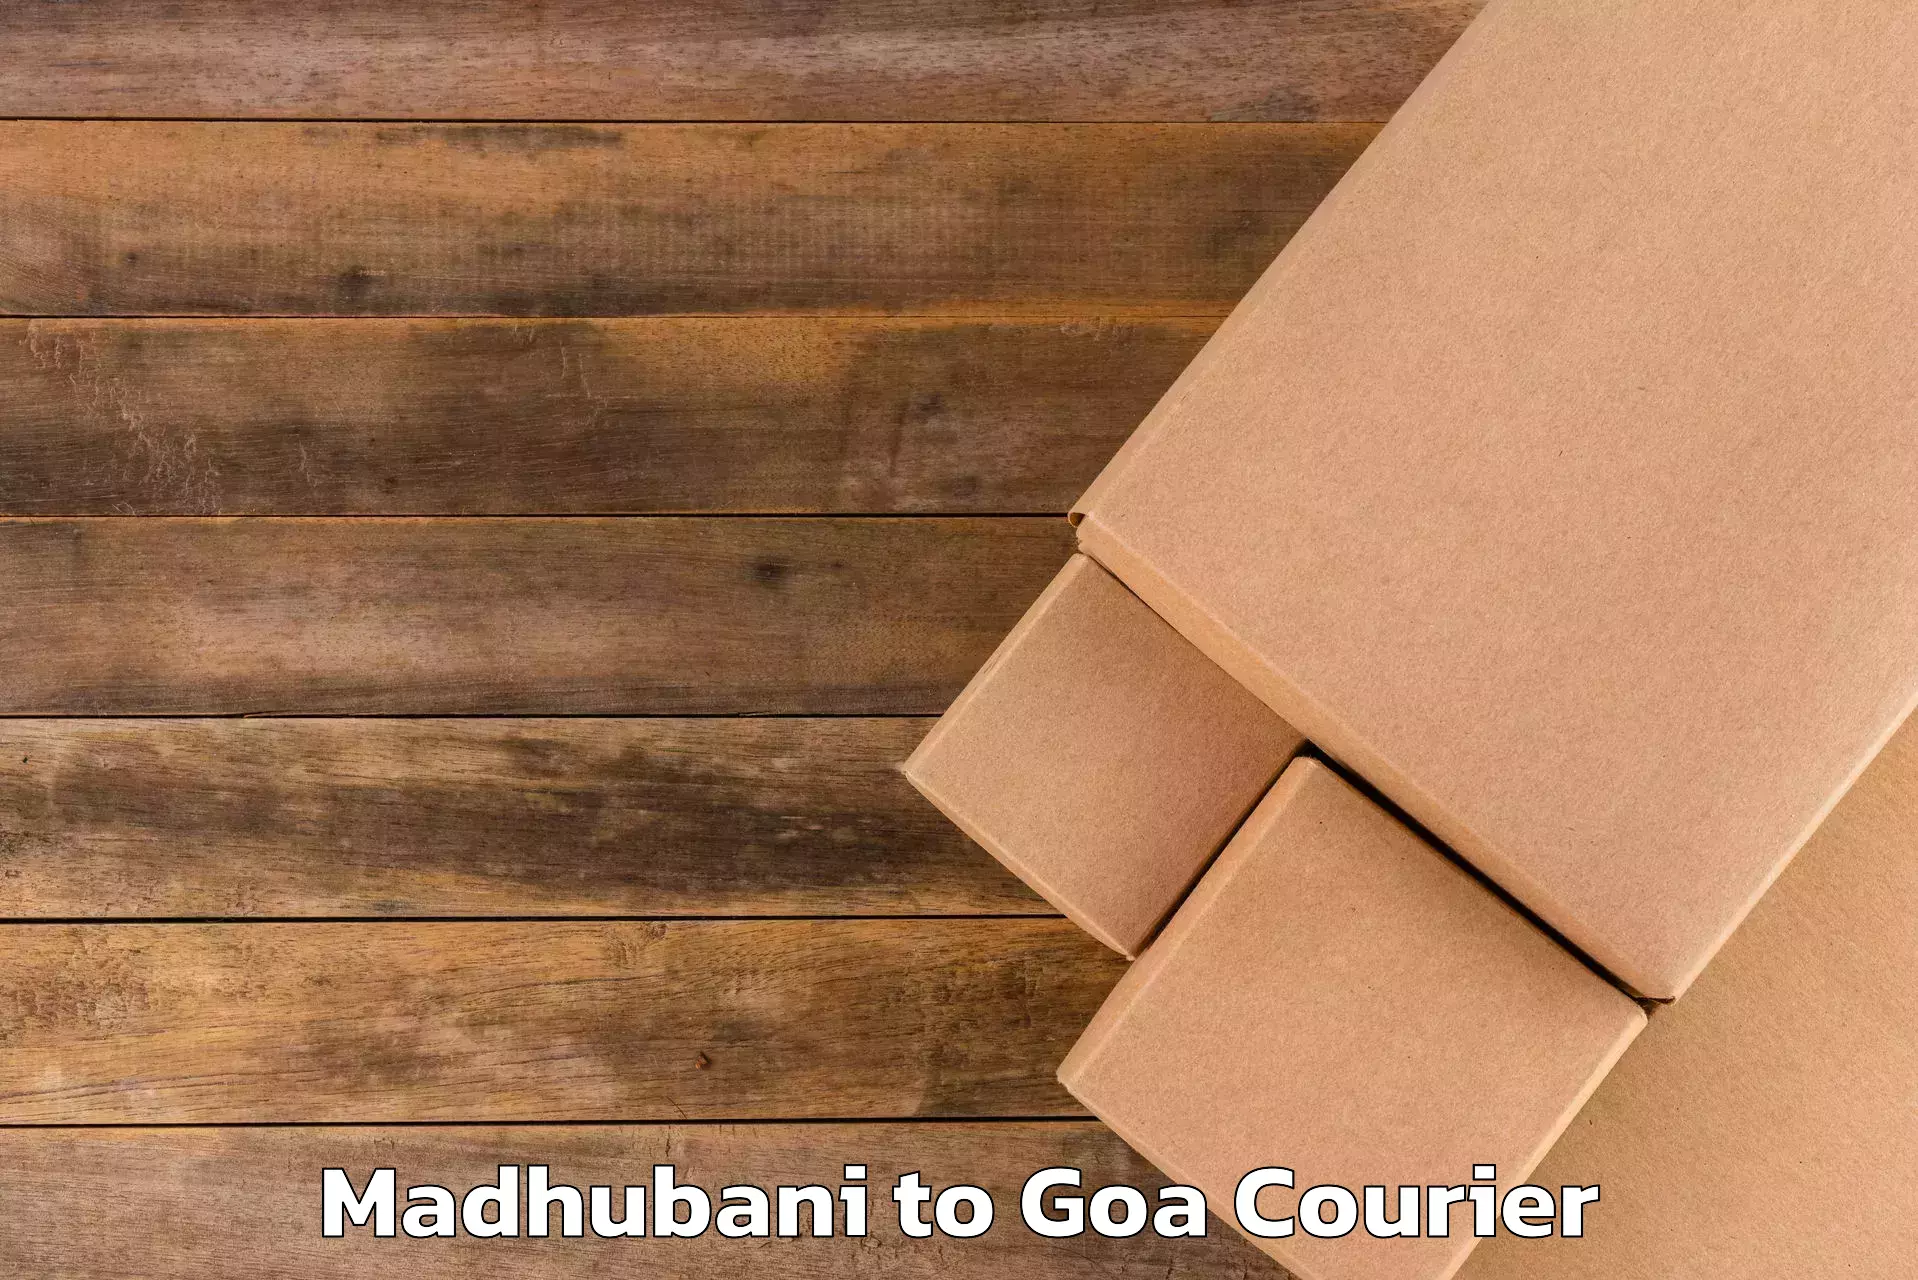 Luggage transport service Madhubani to Goa